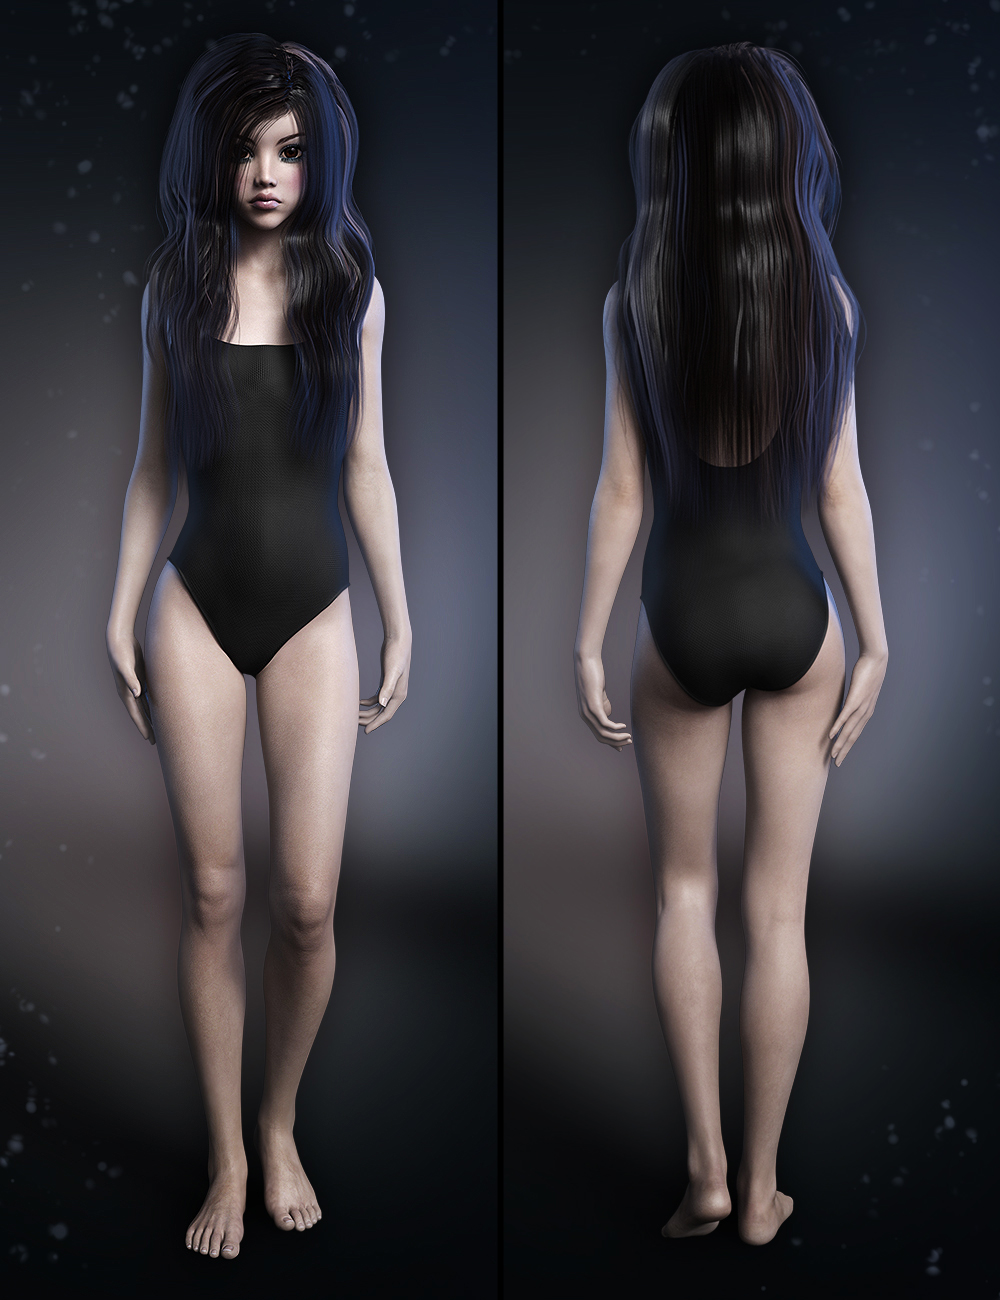 Clarice for Genesis 3 Female by: Fred Winkler ArtSabbyThorne, 3D Models by Daz 3D